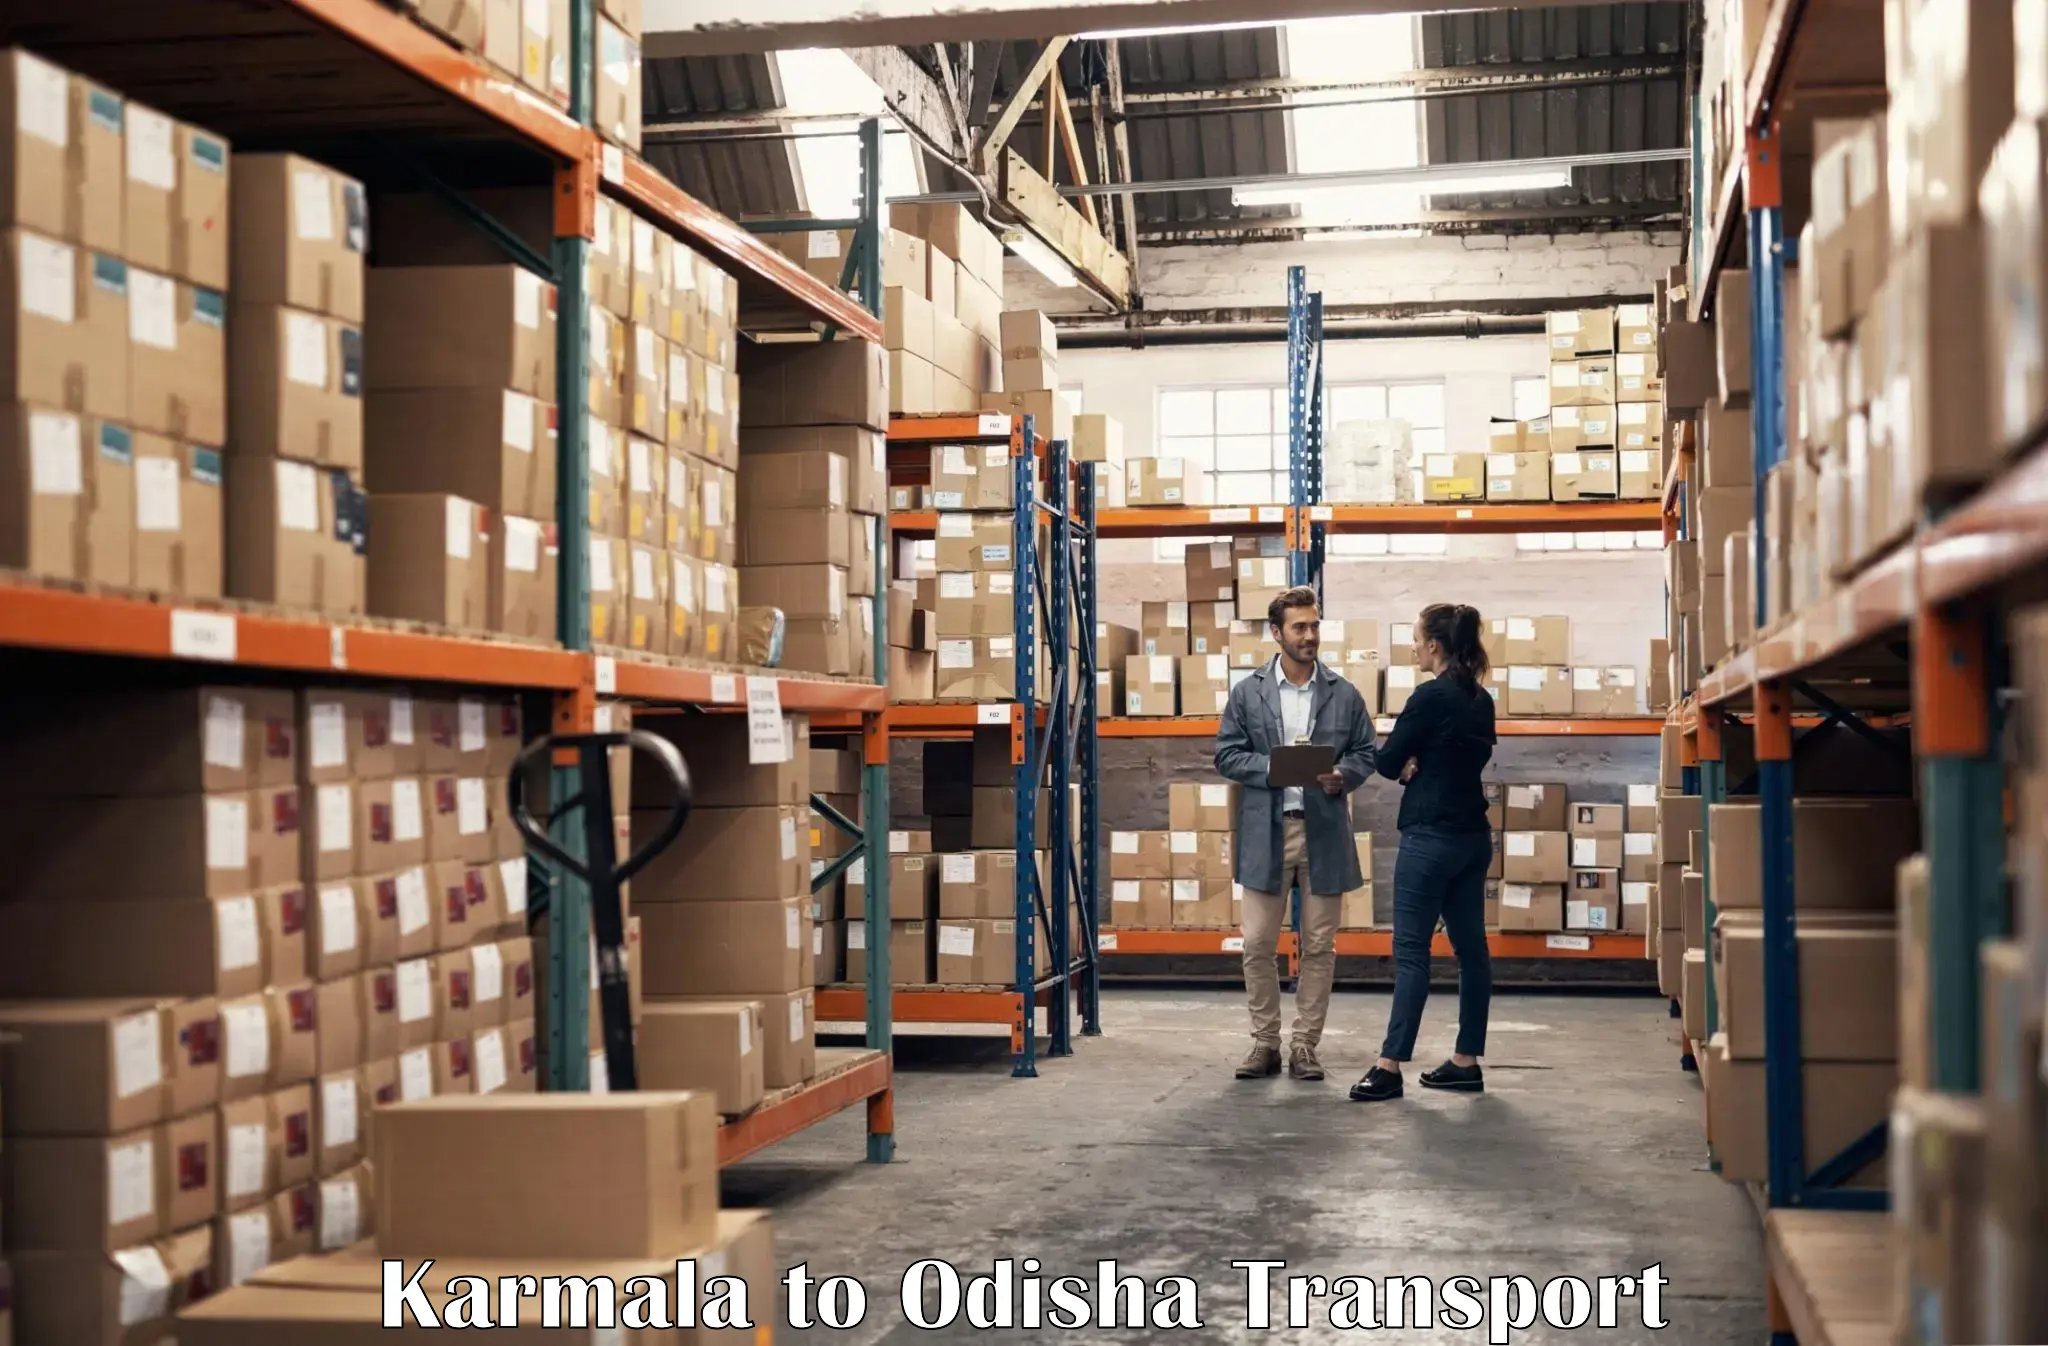 Transport shared services in Karmala to Kalimela